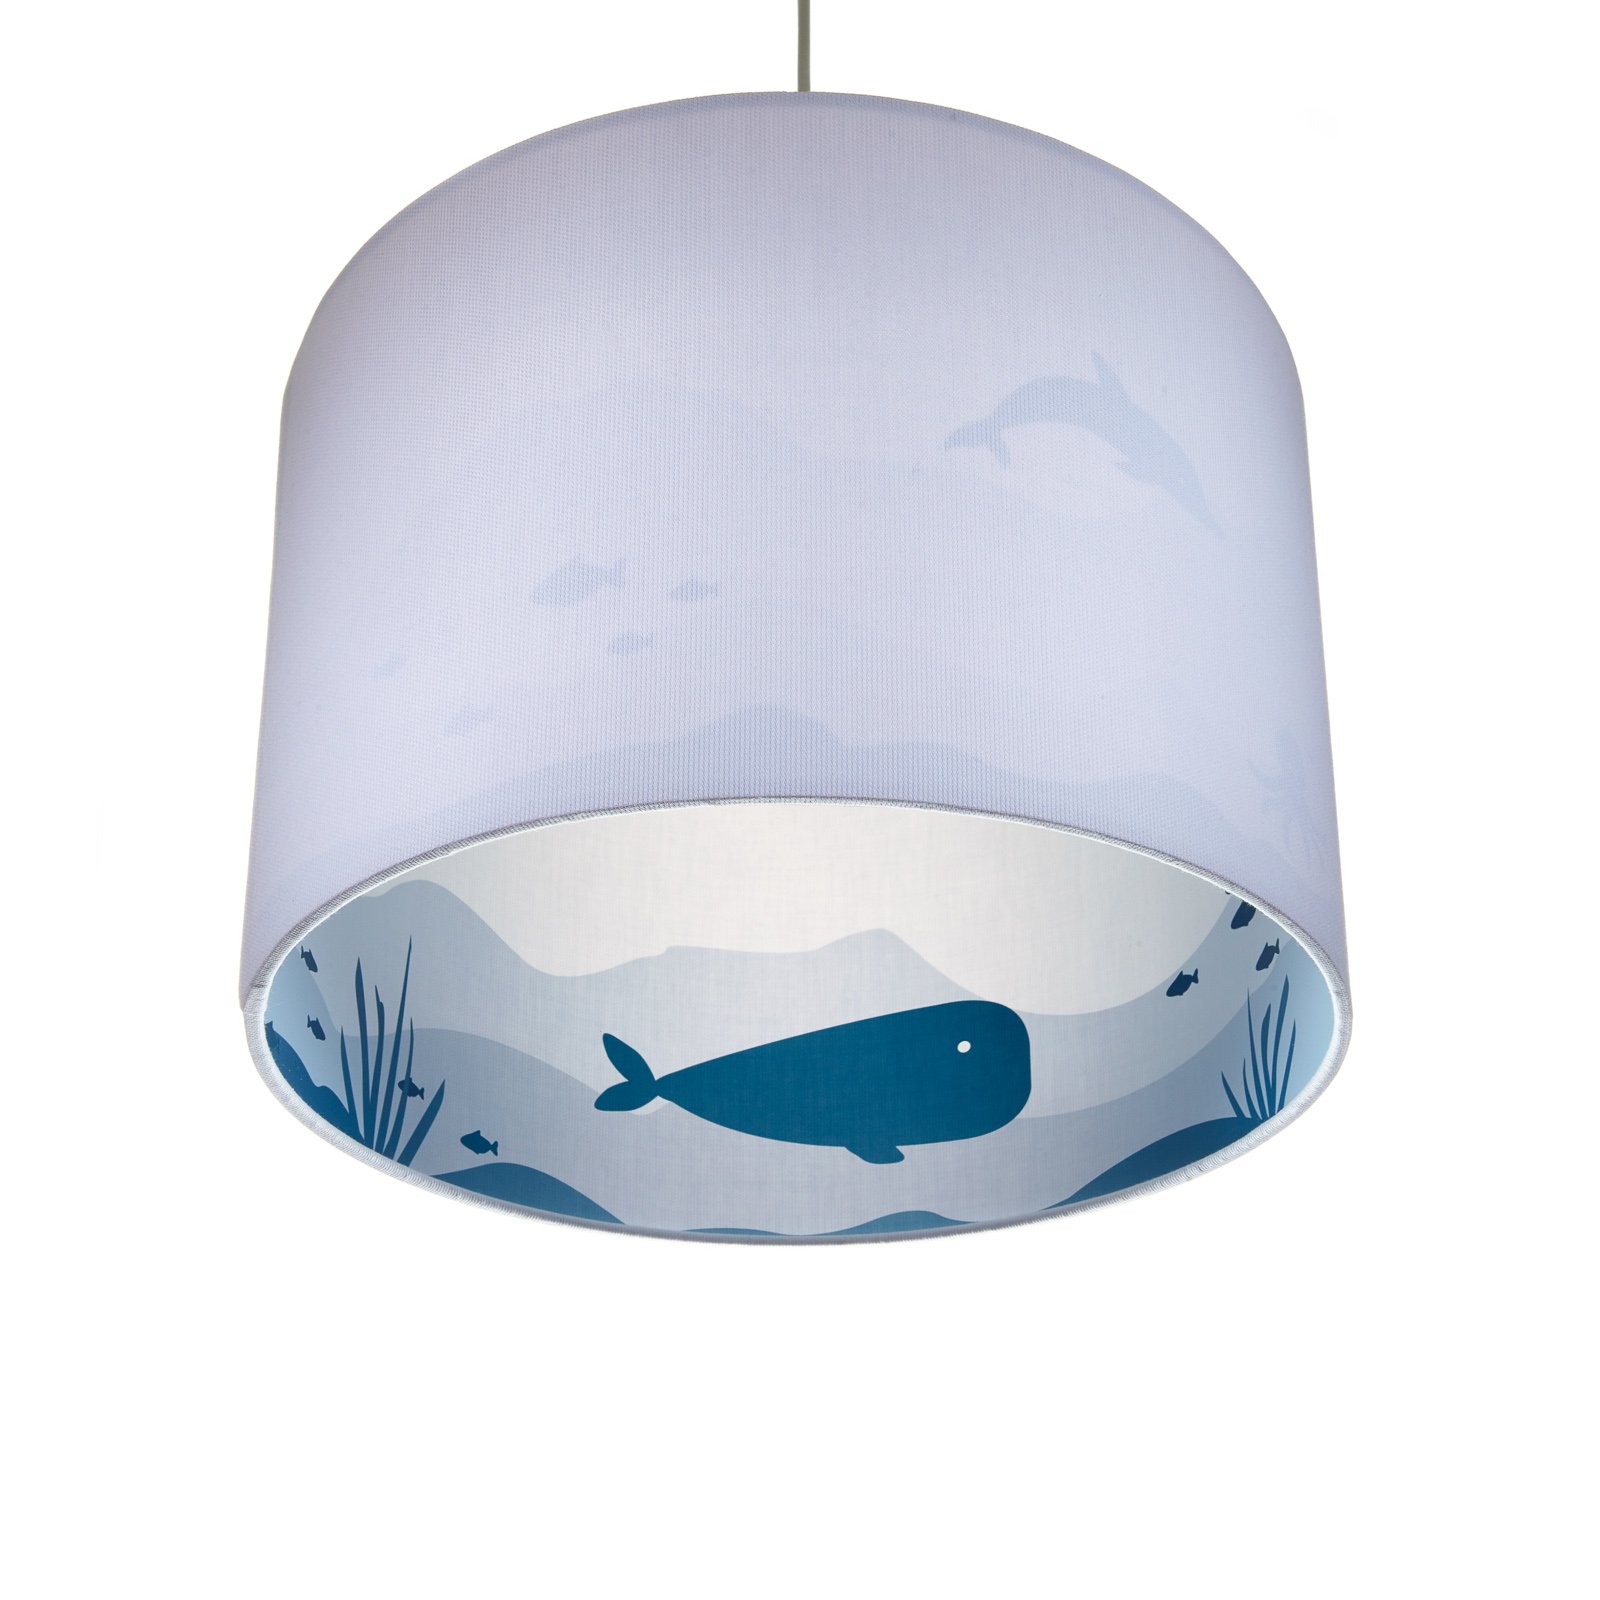 Siluett vaala rippvalgusti halli/sinise värvusega